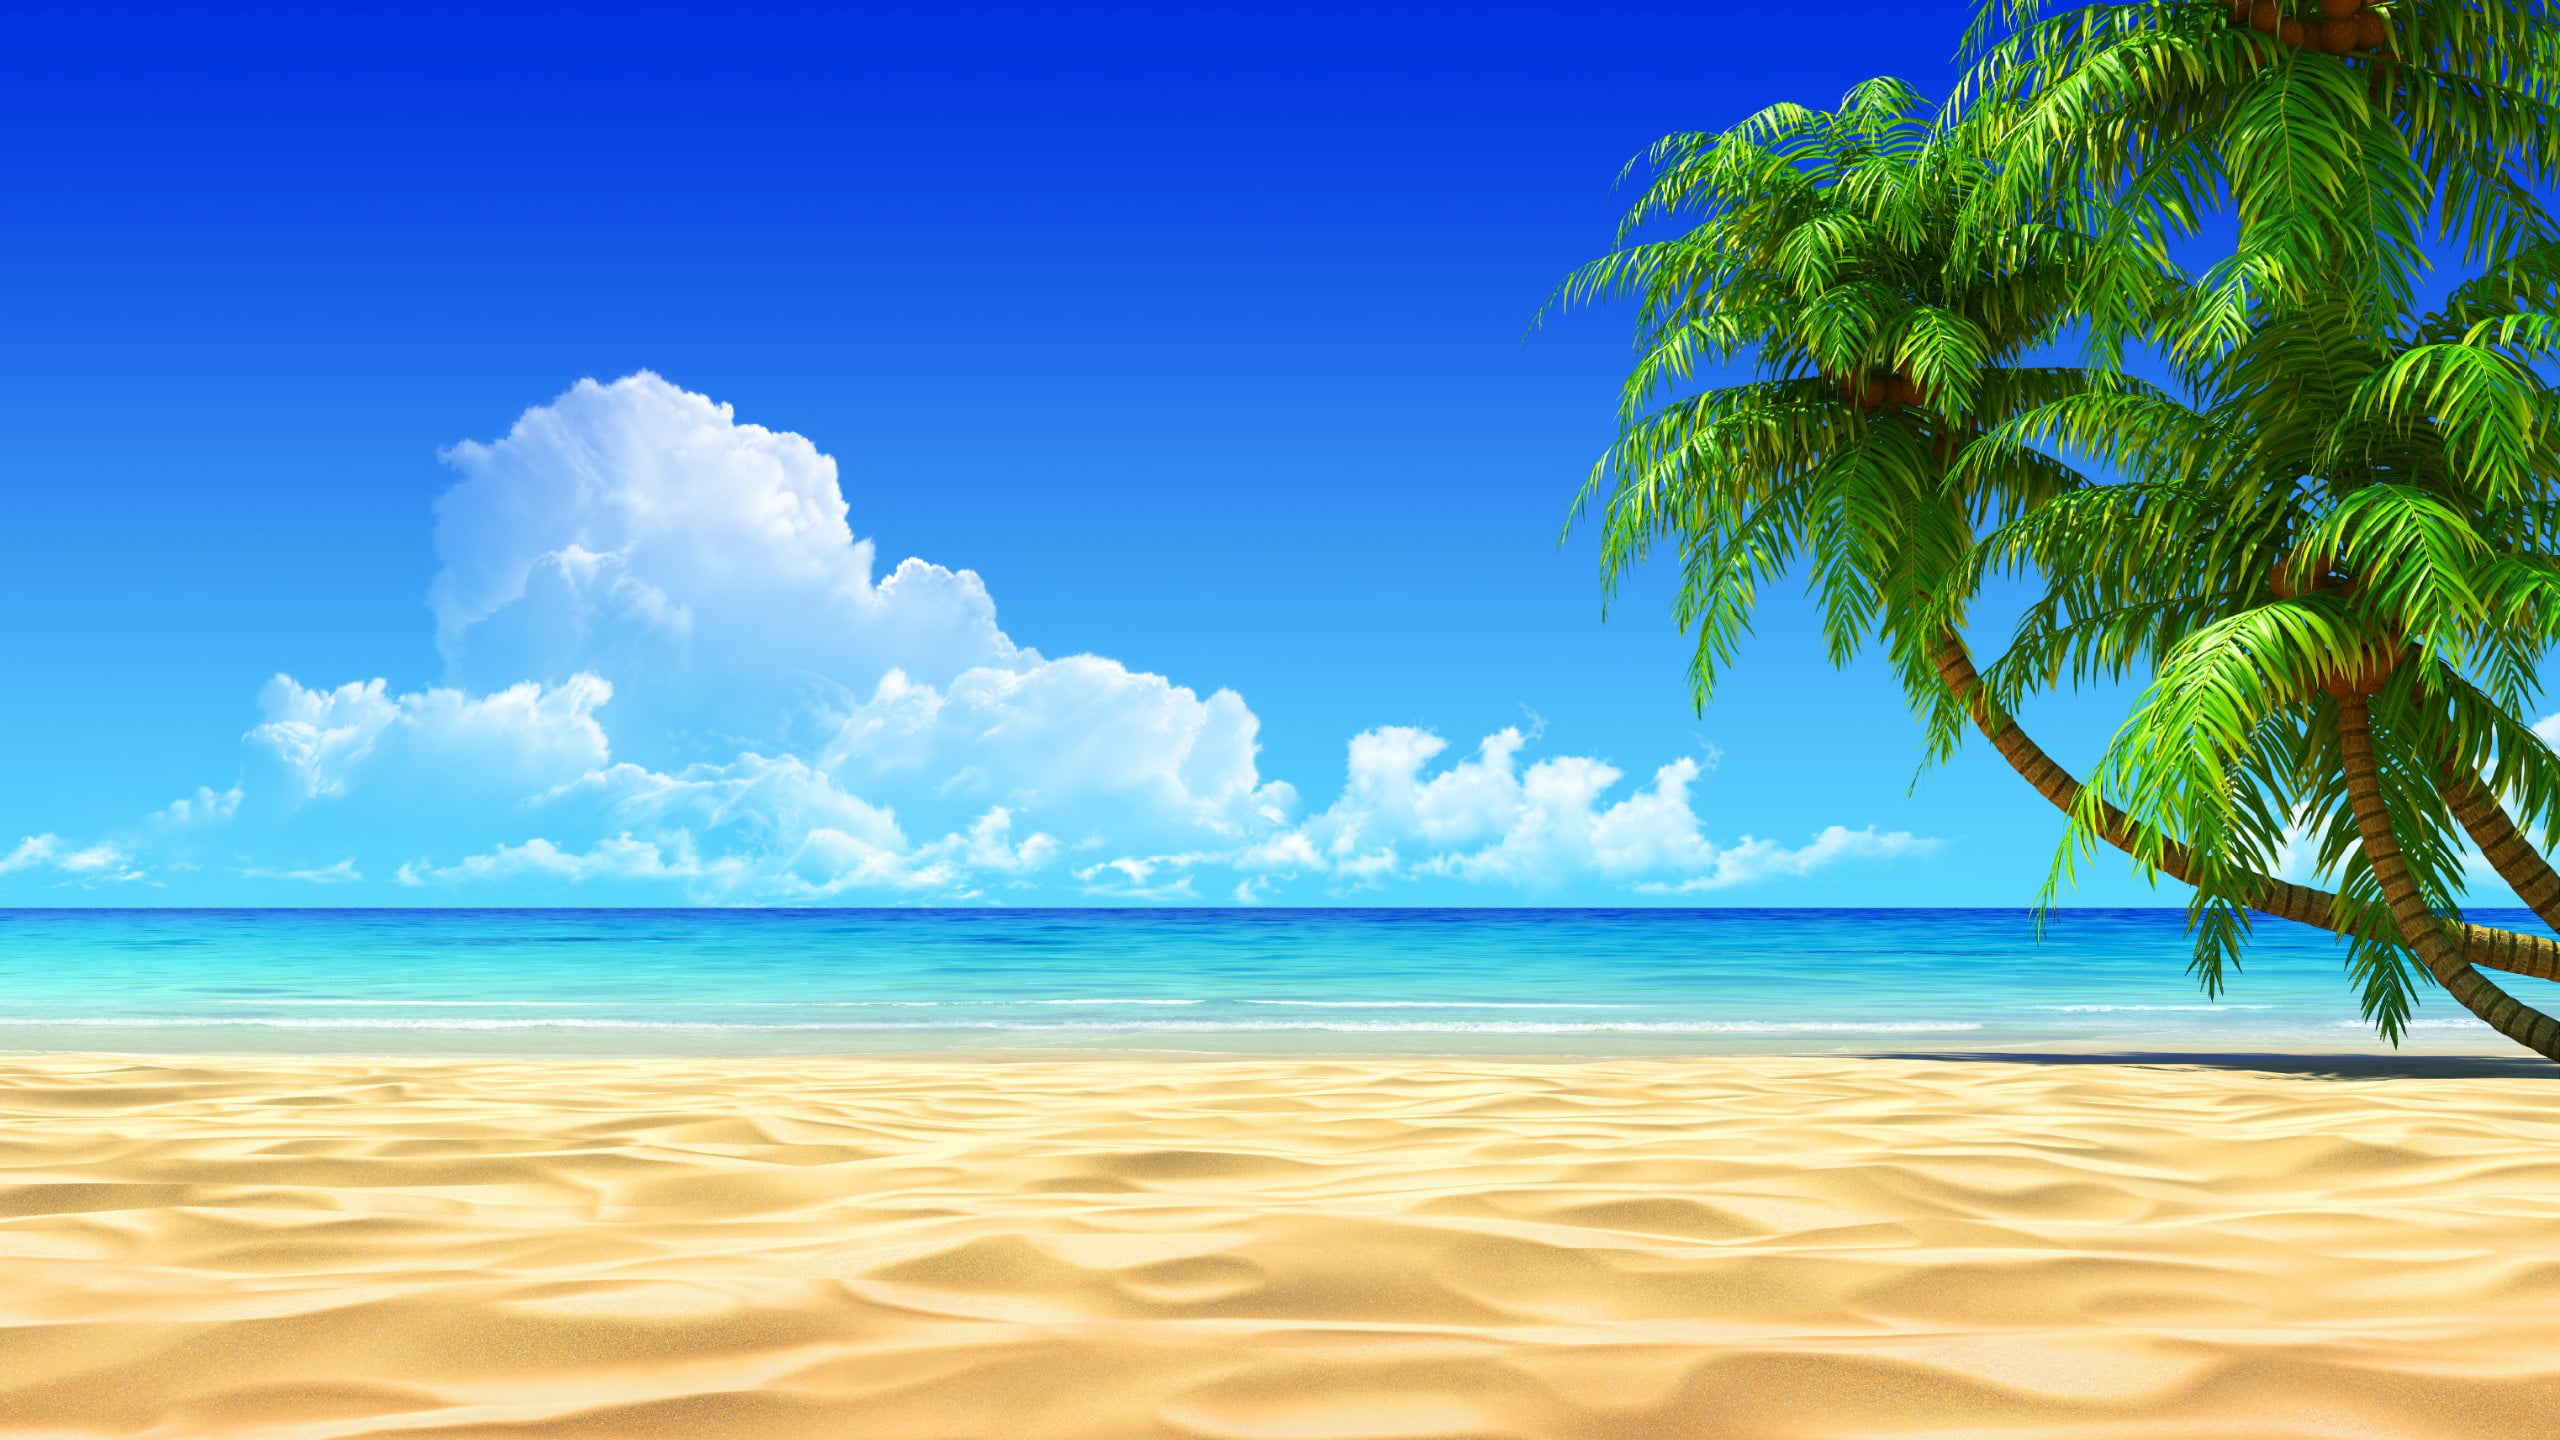 Bãi biển đẹp với bầu trời xanh và ánh nắng tỏa sáng là một điều tuyệt vời. Hãy từ từ thư giãn với màn hình của bạn với những tấm hình nền tuyệt đẹp về bãi biển này.